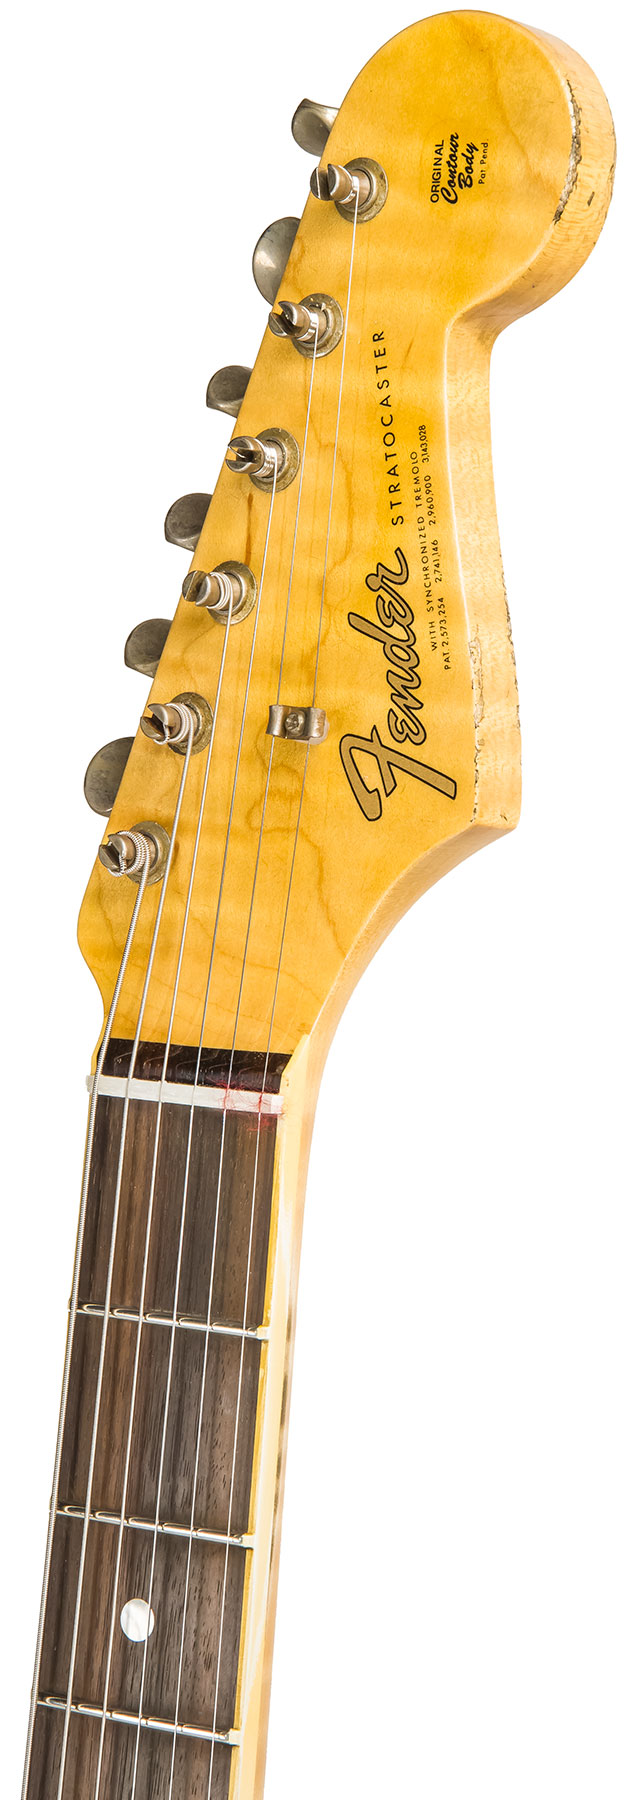 Fender Custom Shop Strat 1965 Ltd Usa Rw #cz548544 - Relic Daphne Blue Sparkle - Guitare Électrique Forme Str - Variation 5